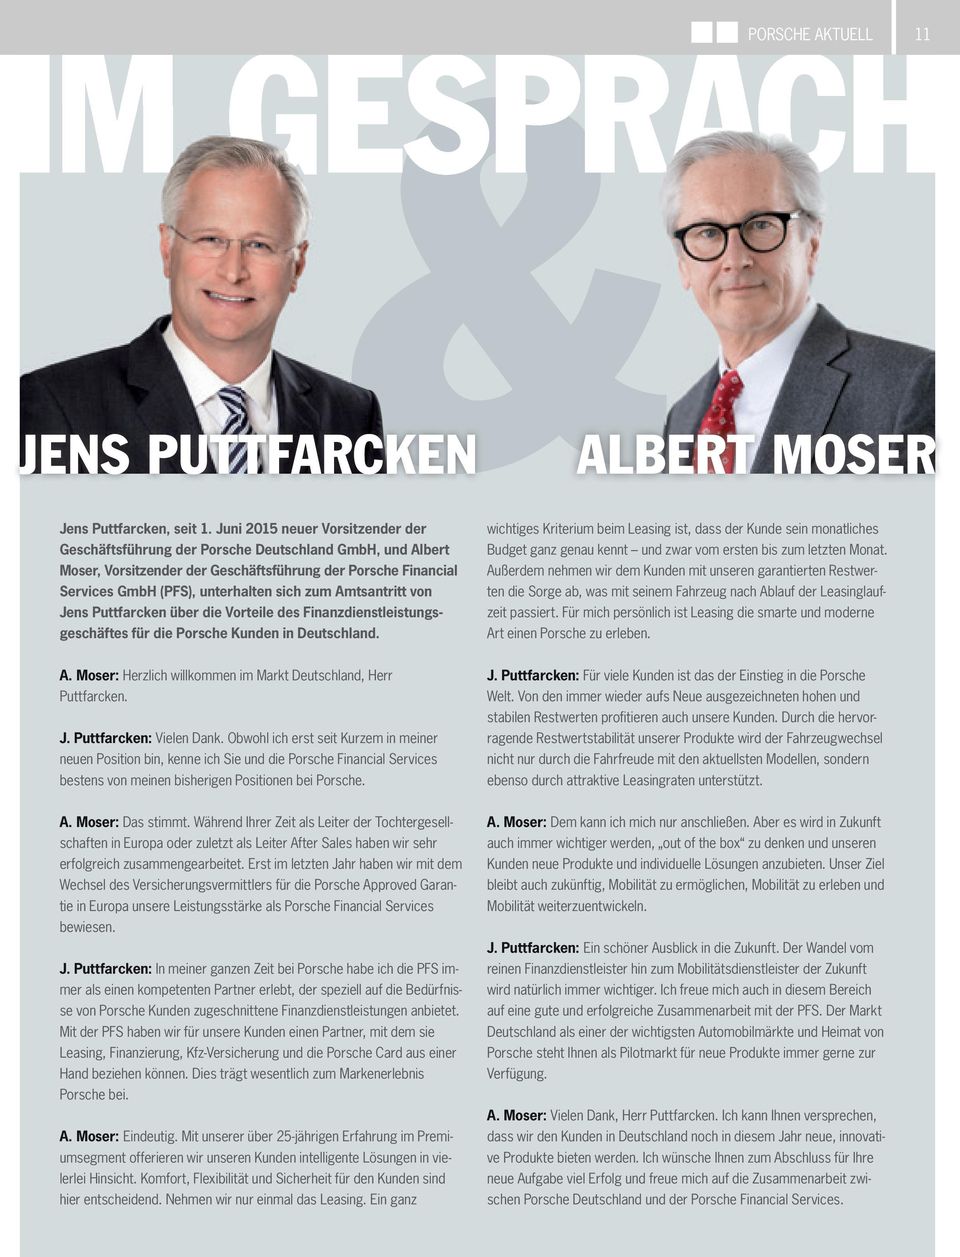 Amtsantritt von Jens Puttfarcken über die Vorteile des Finanzdienstleistungsgeschäftes für die Porsche Kunden in Deutschland.